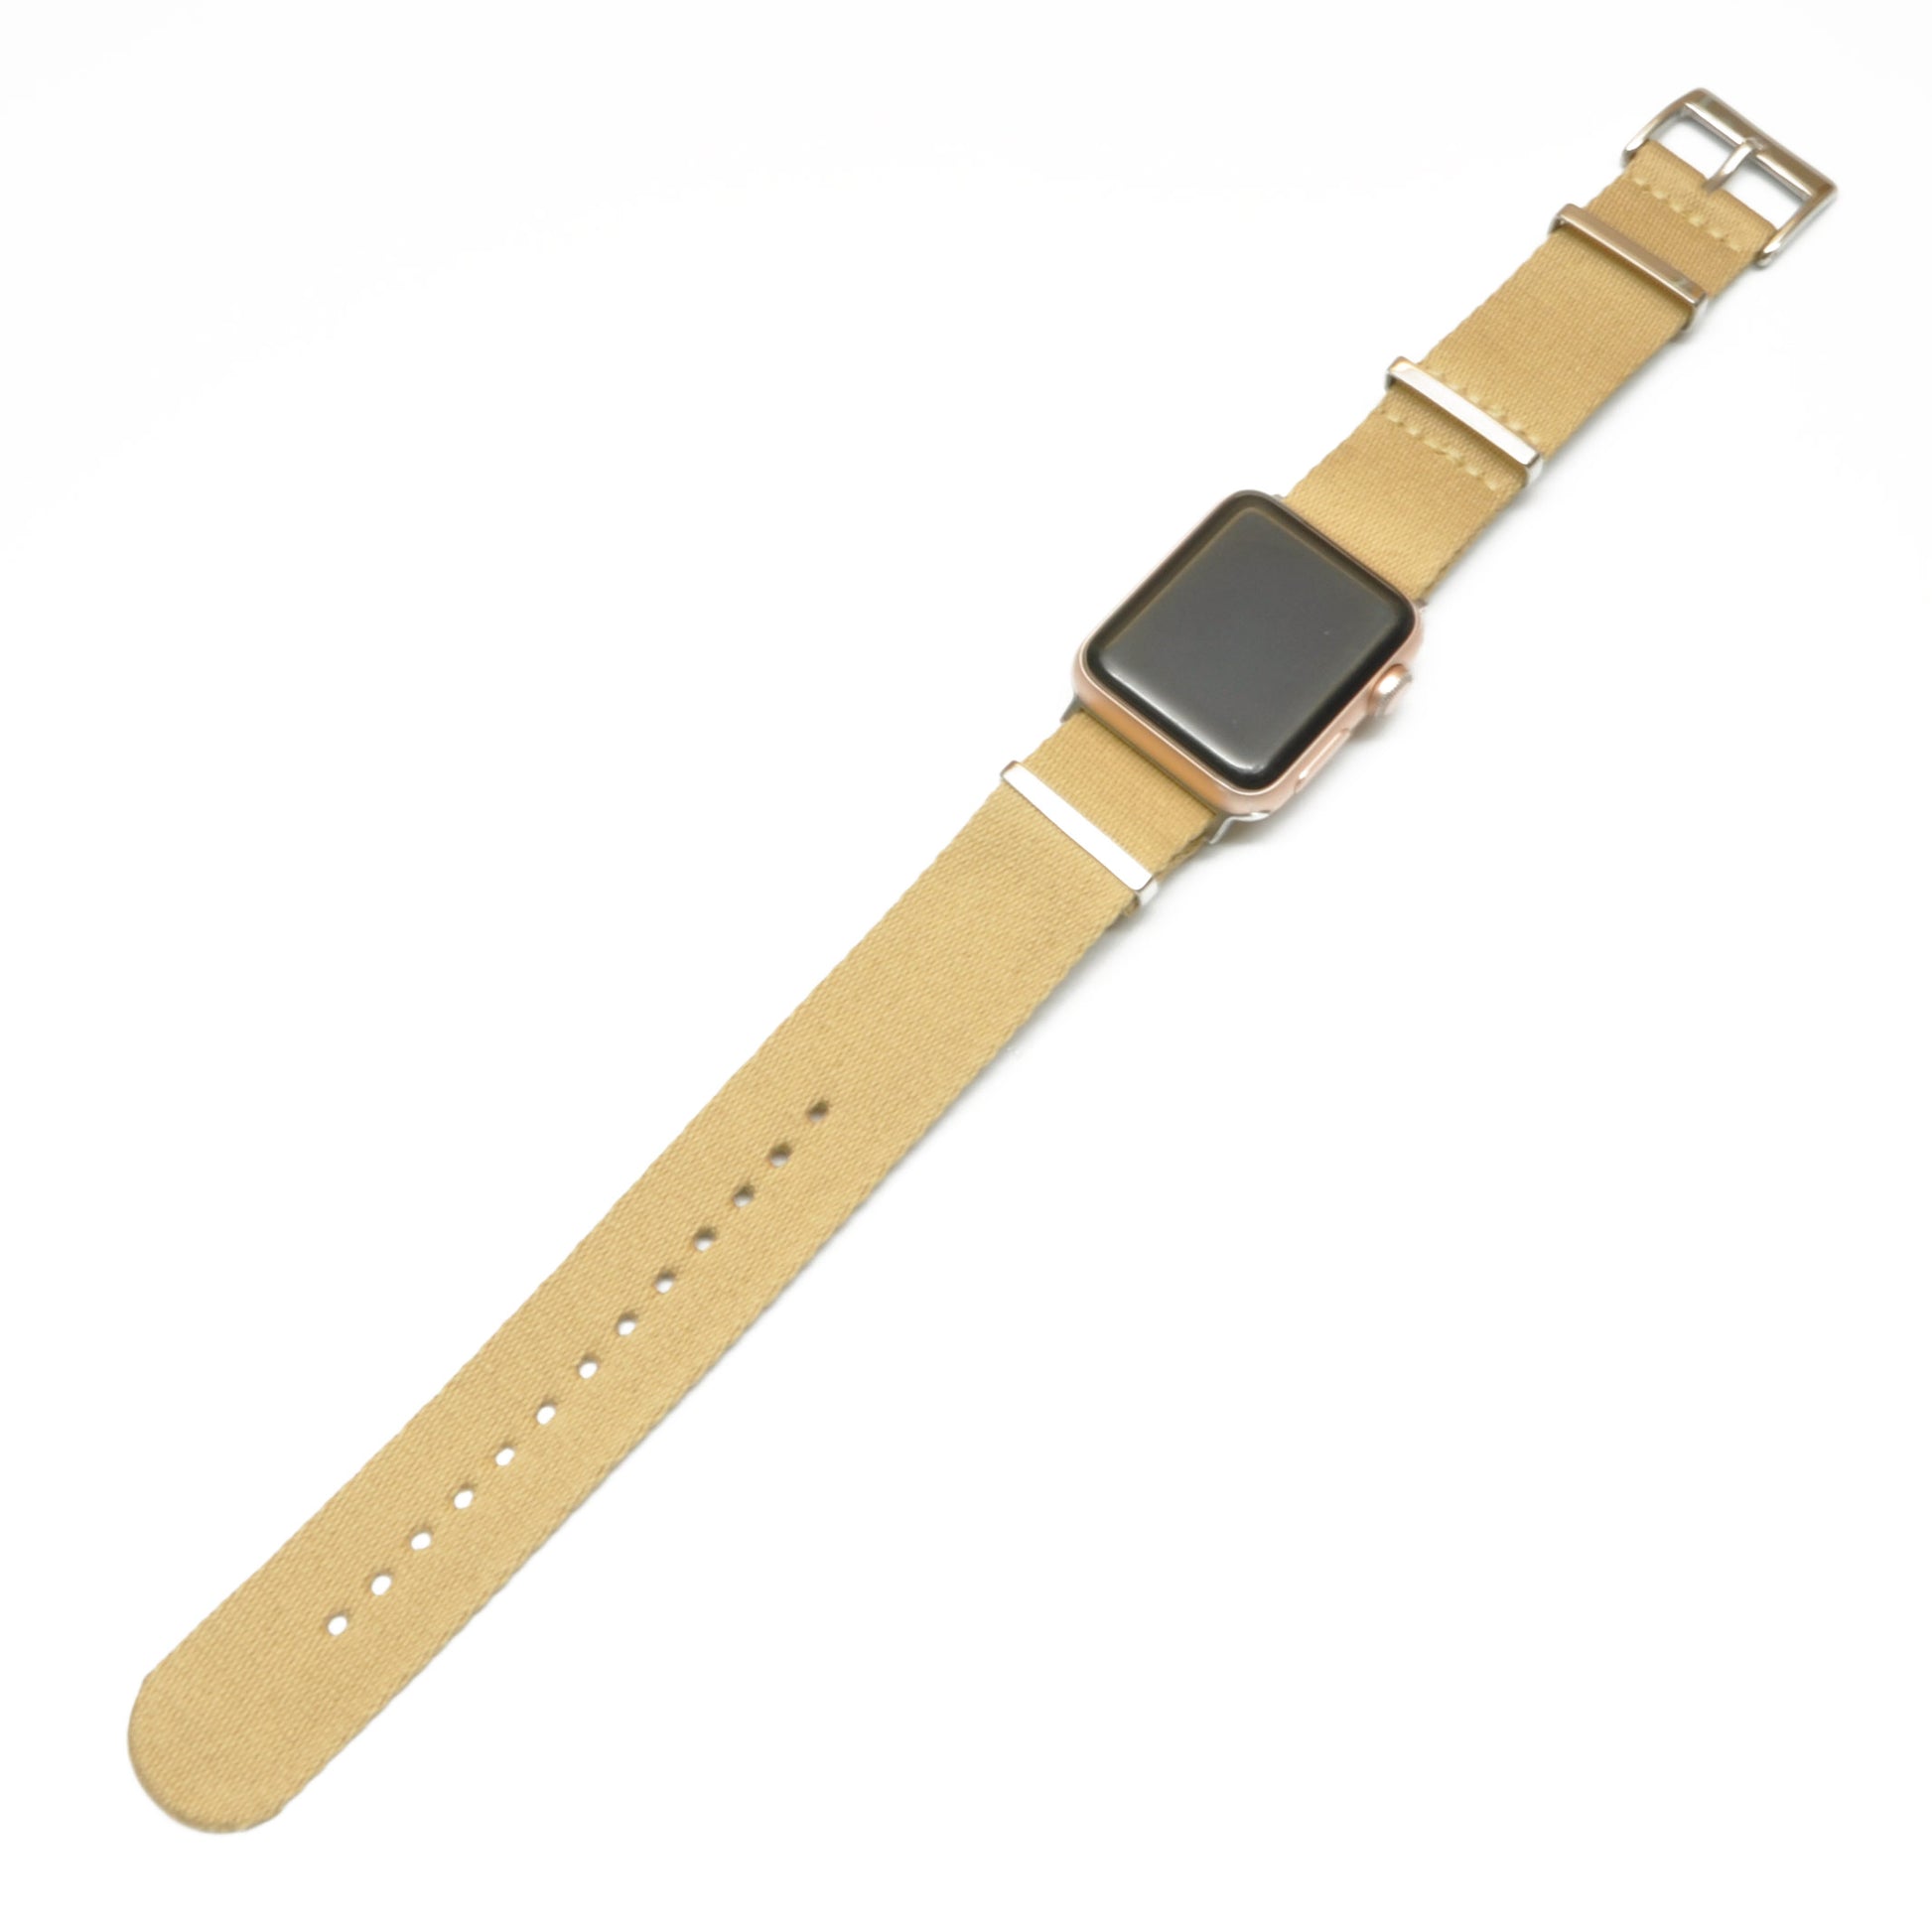 NATO-strap til Apple Watch | Beige | Adapter inkludert - Klokkr